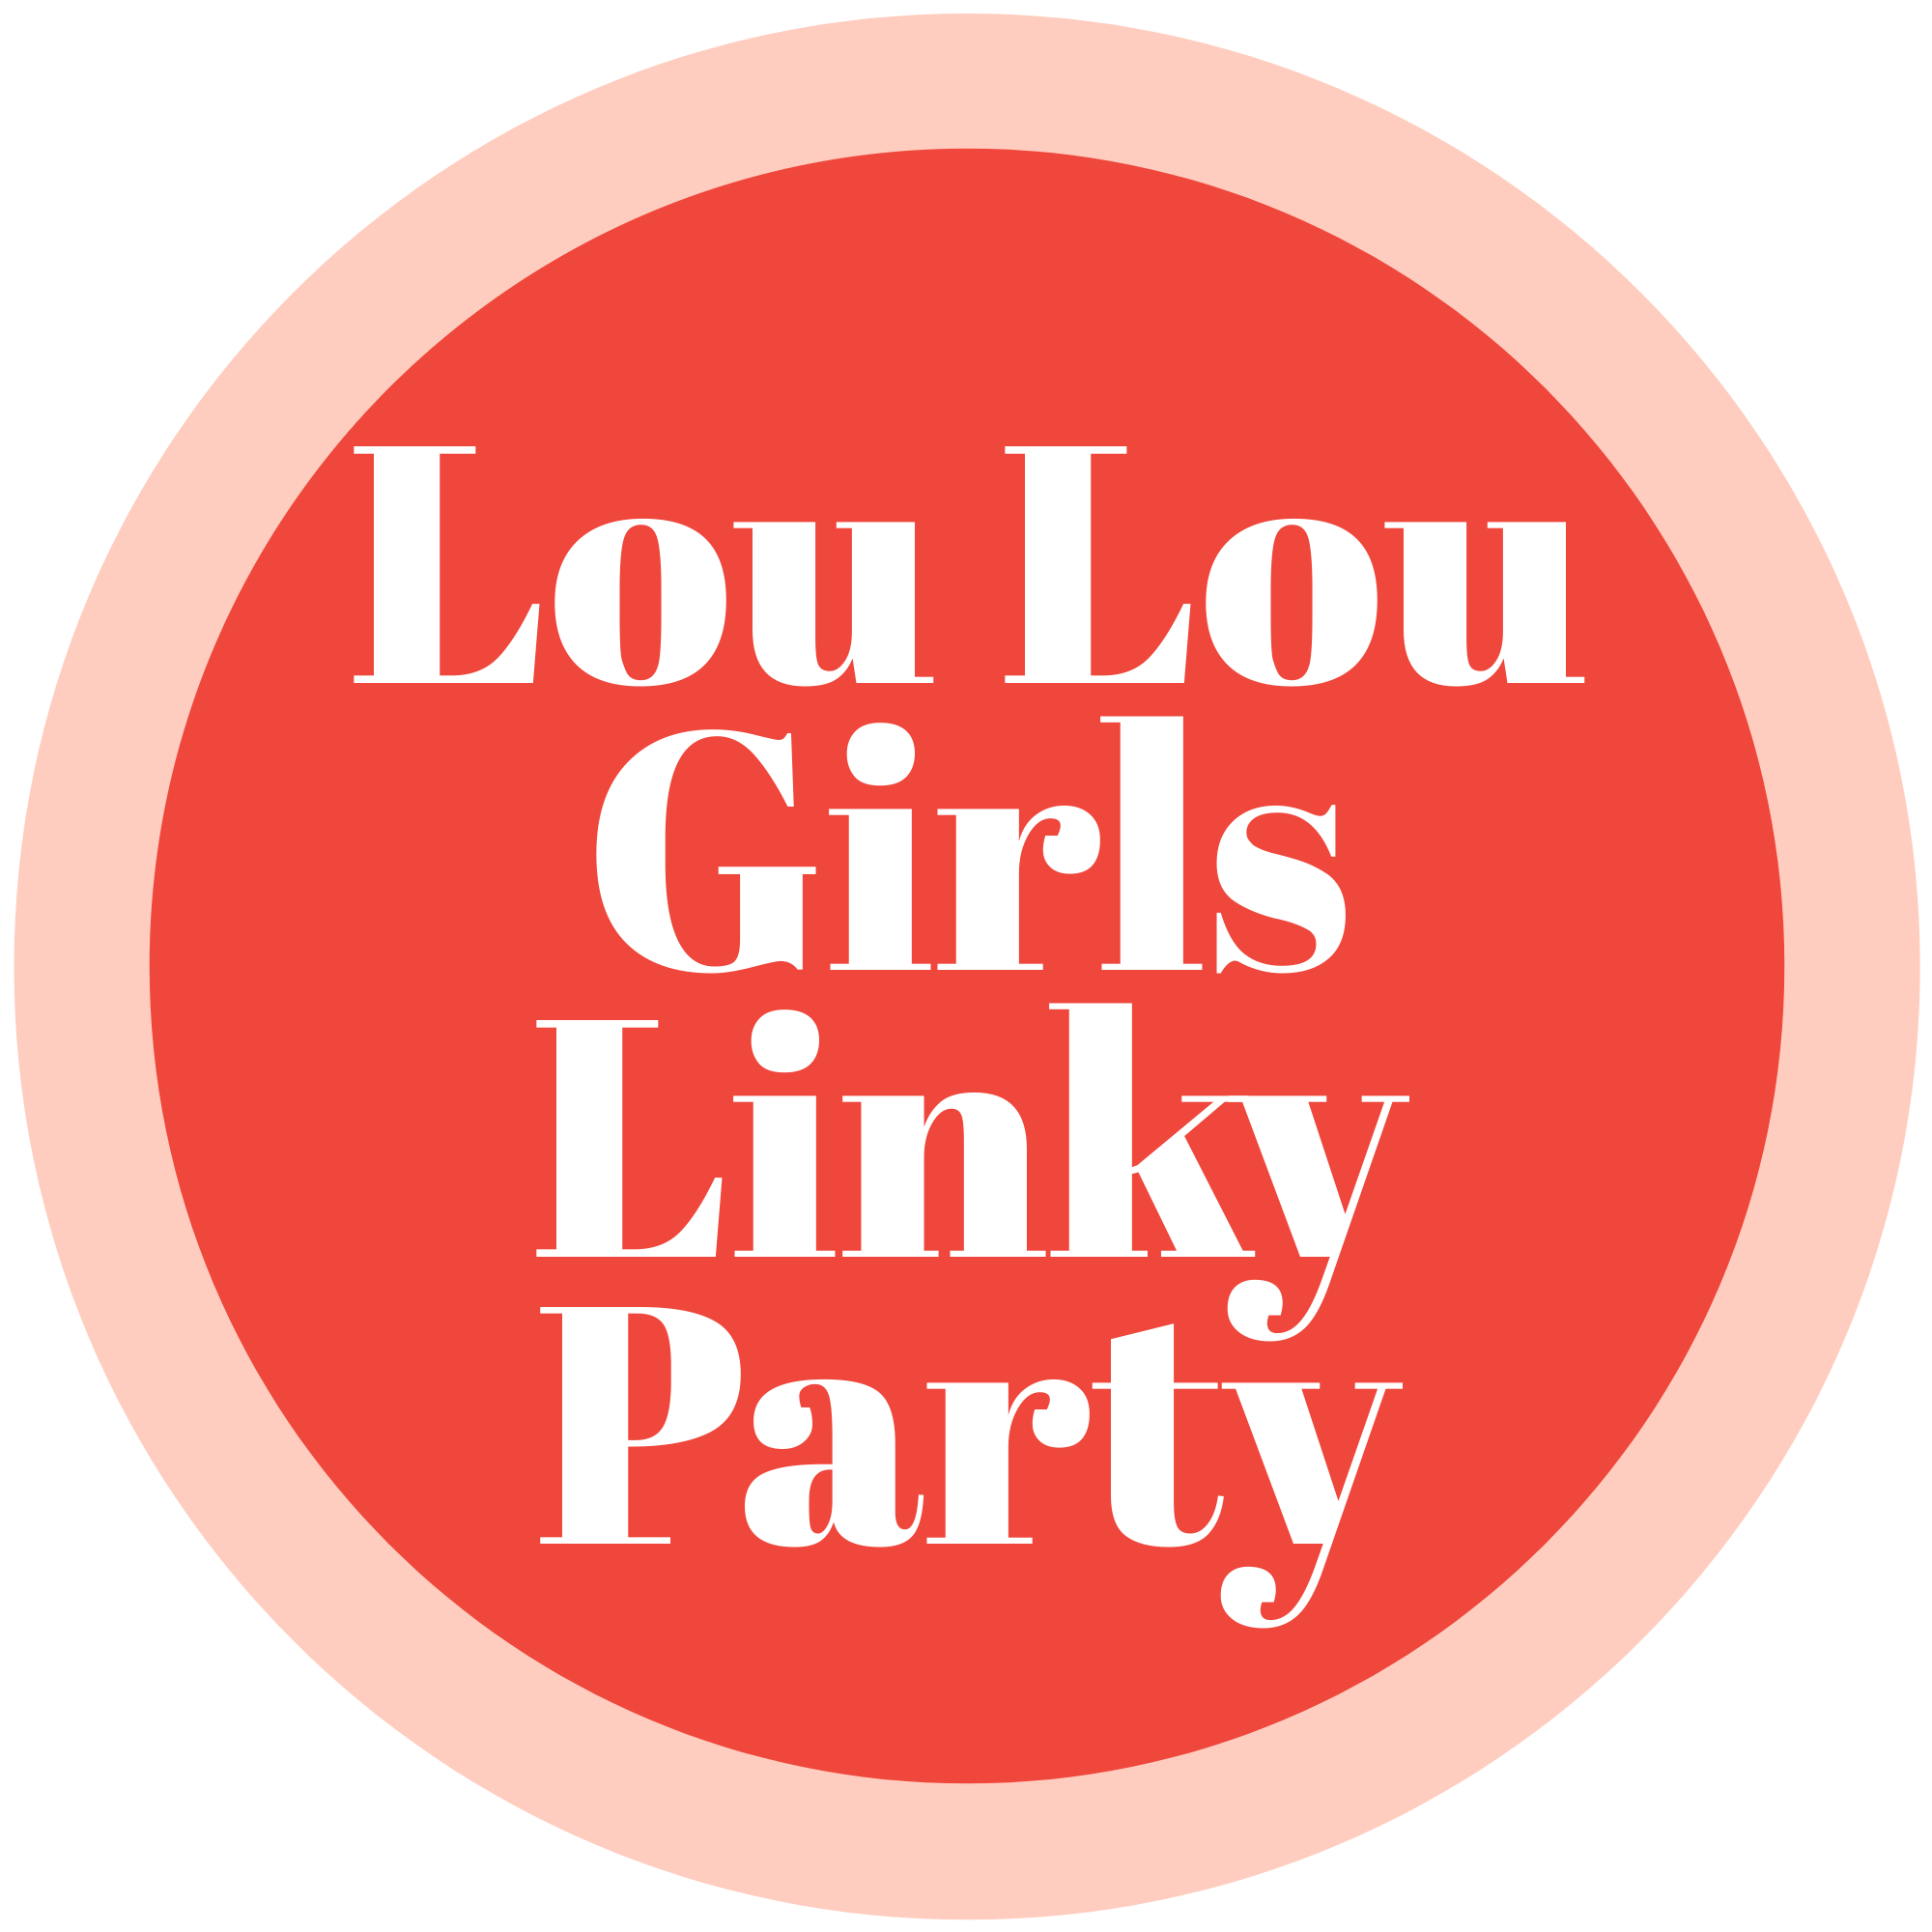 LOU LOU GIRLS FABULOUS PARTY 516